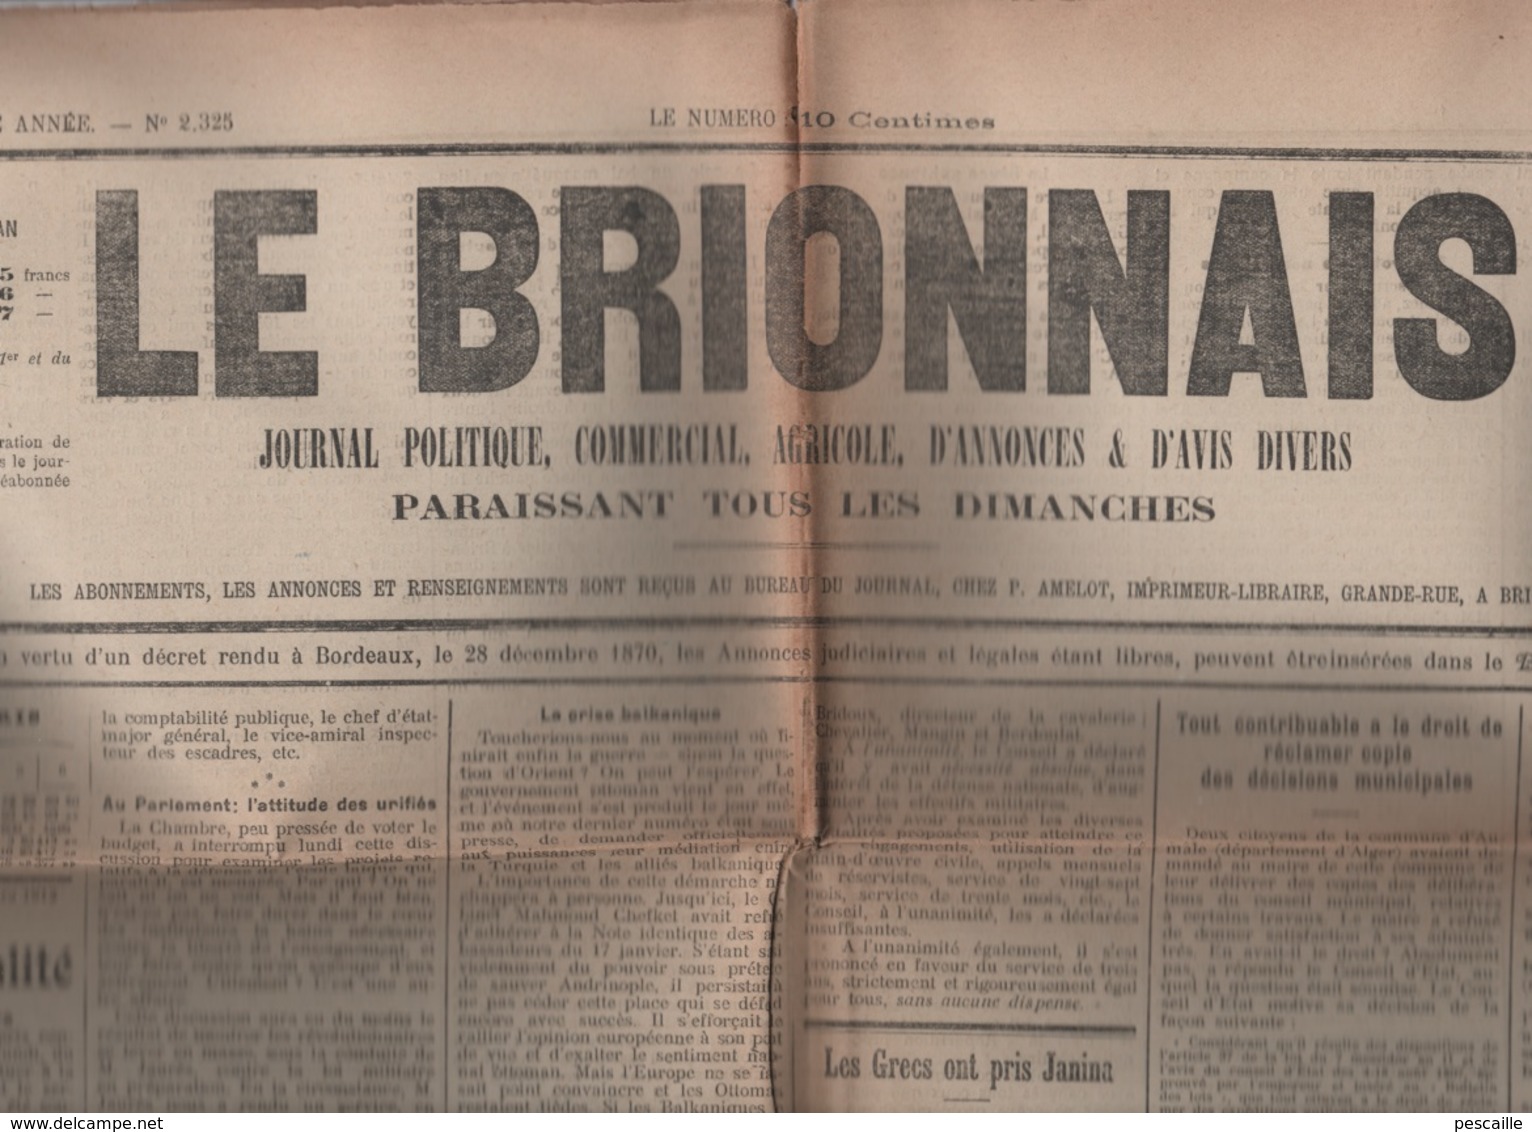 27 EURE - LE BRIONNAIS 09 03 1913 BRIONNE - SERVICE MILITAIRE - GRECE TURQUIE JANINA - BALKANS - SAPEURS POMPIERS - - Allgemeine Literatur